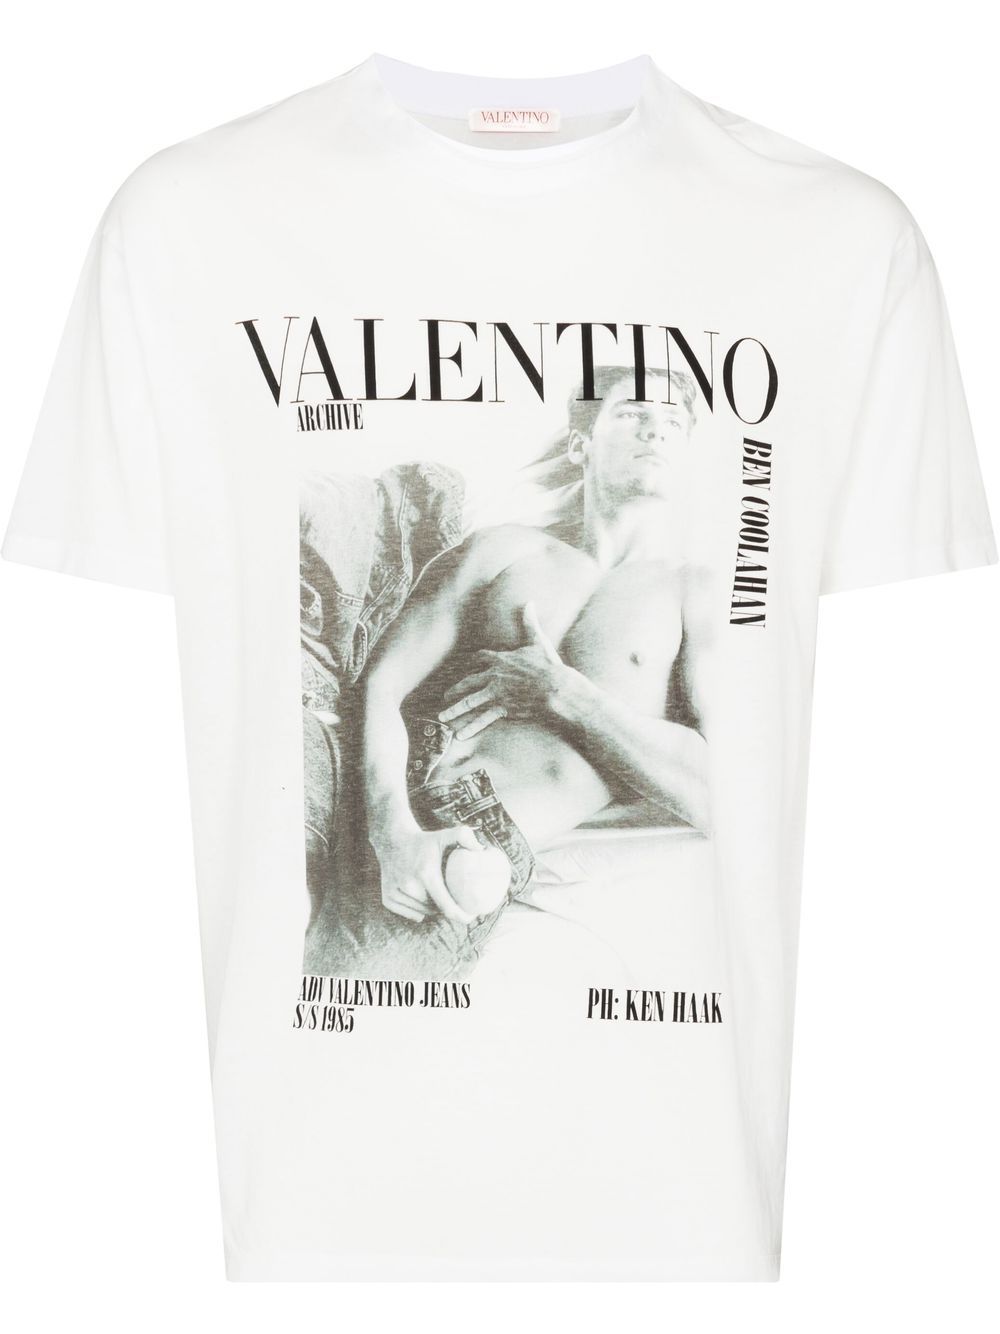 Valentino Archive 1985 print T-shirt